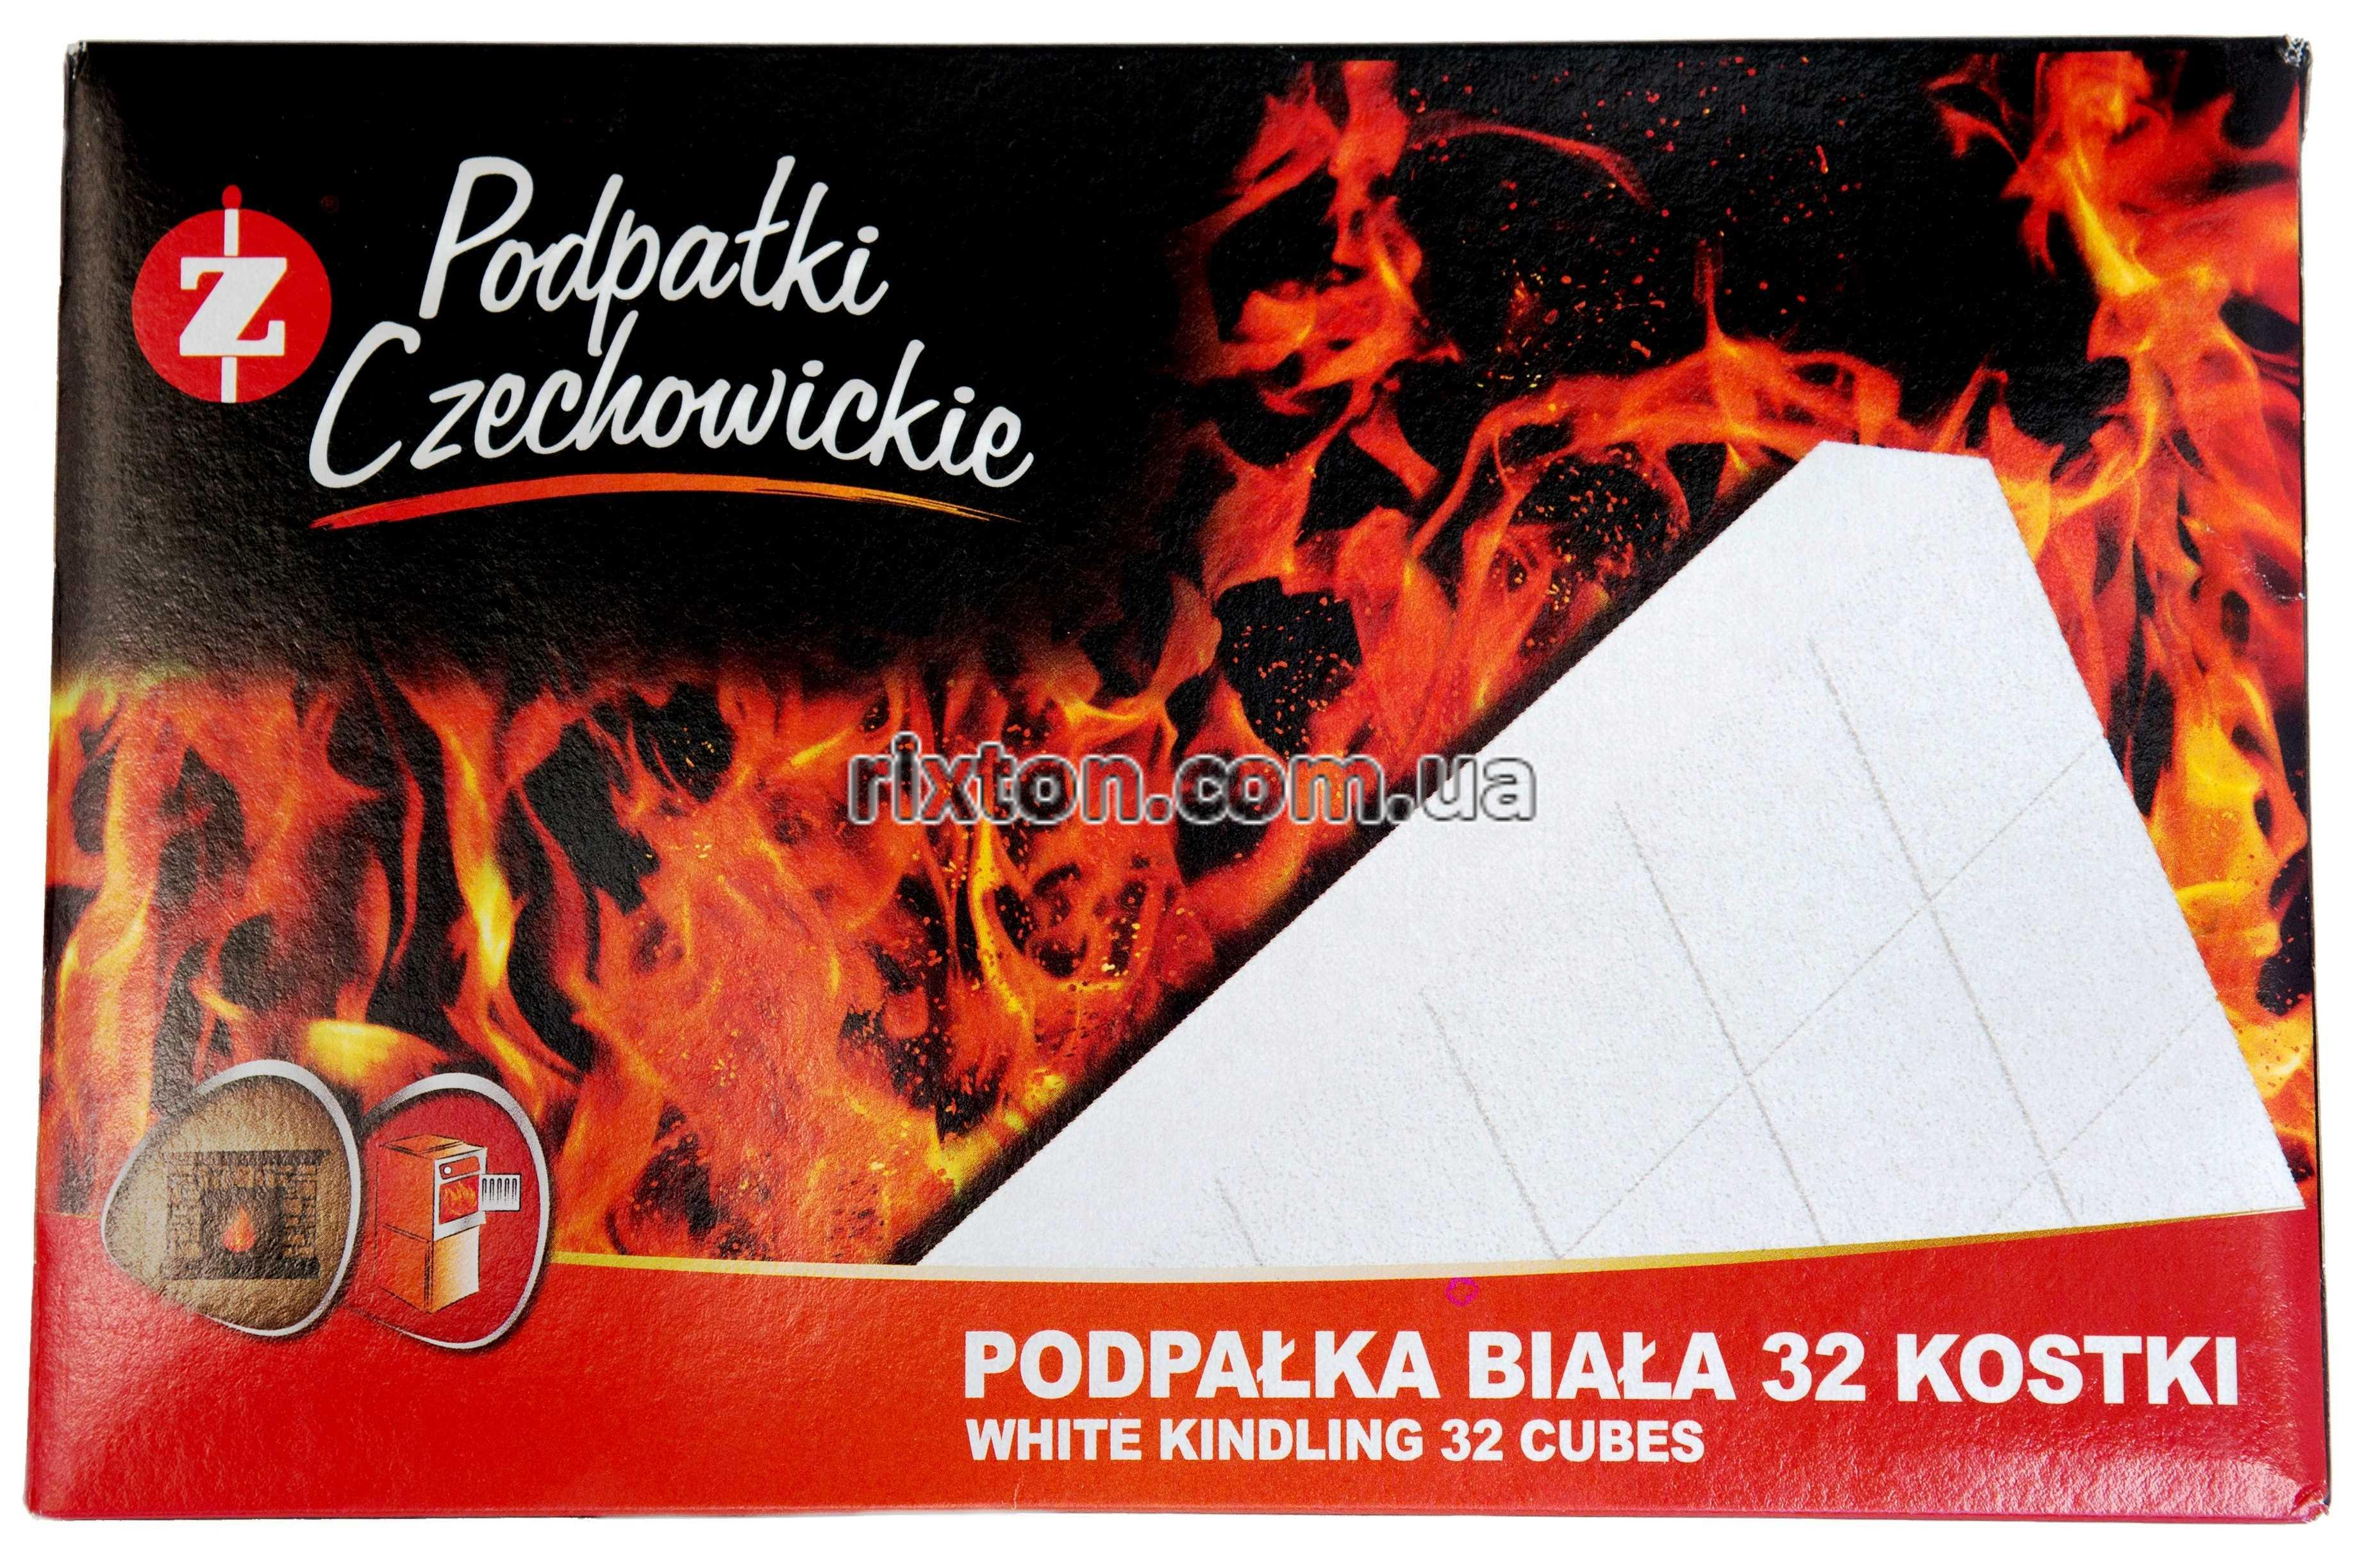 Разжигатели огня Czechowice в картонной упаковке белые 32 шт.